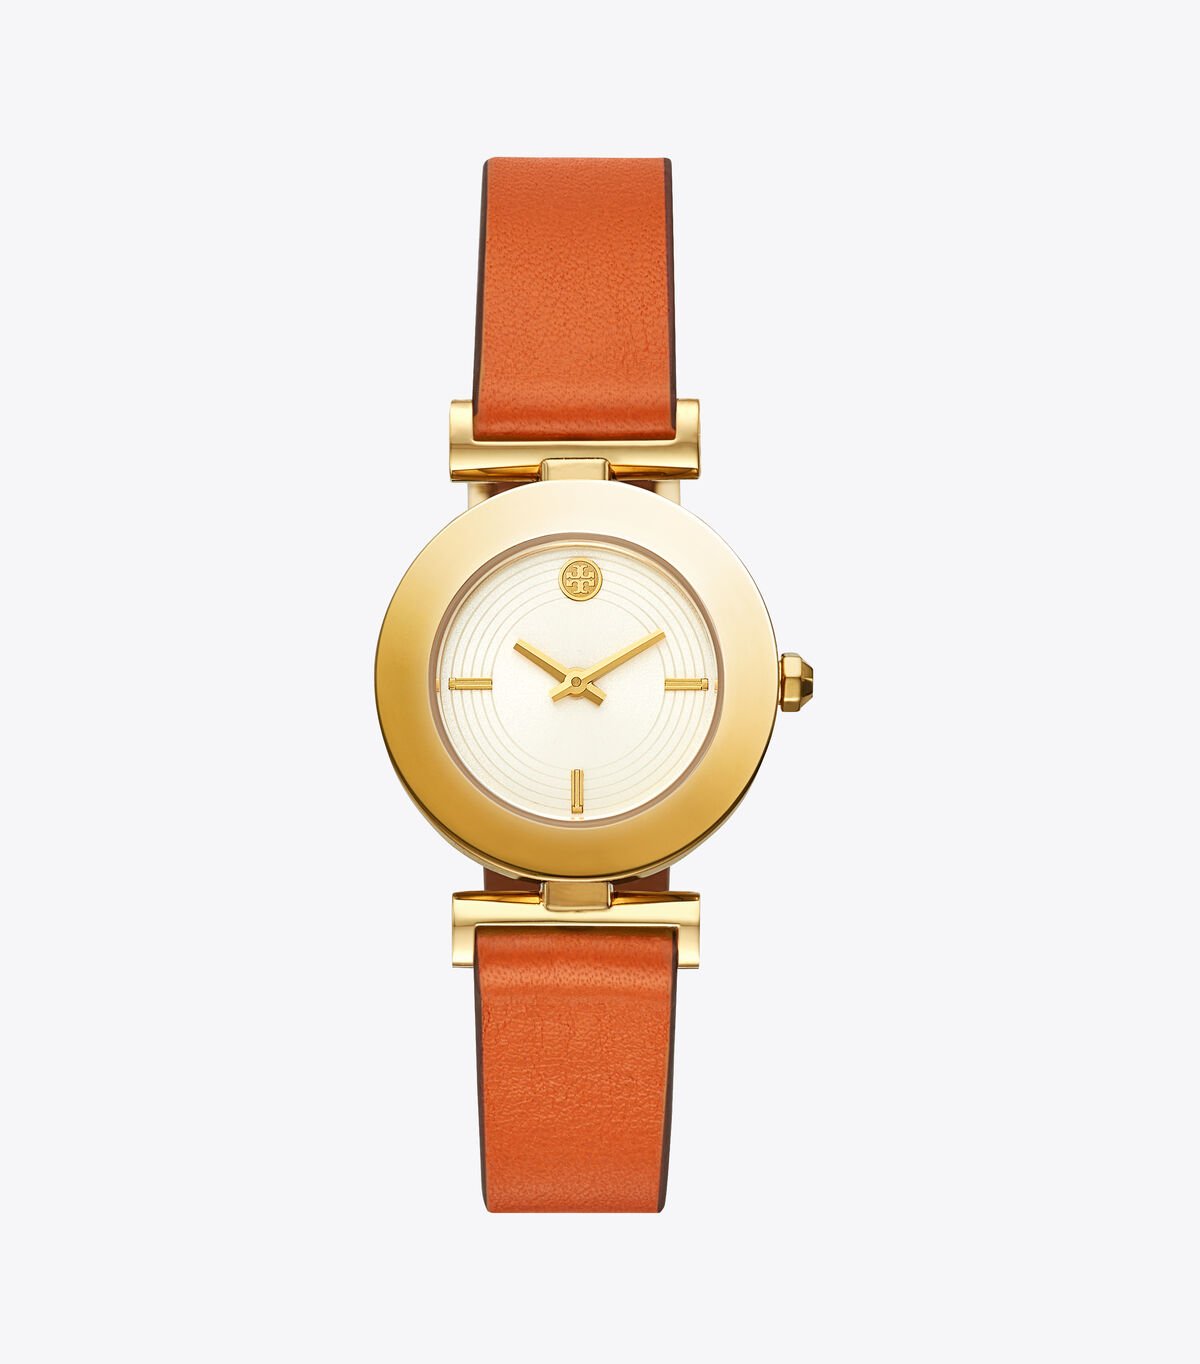 Sawyer Twist Round Watch, Brown/Orange Leather, Gold Tone, 29 X 29 MM